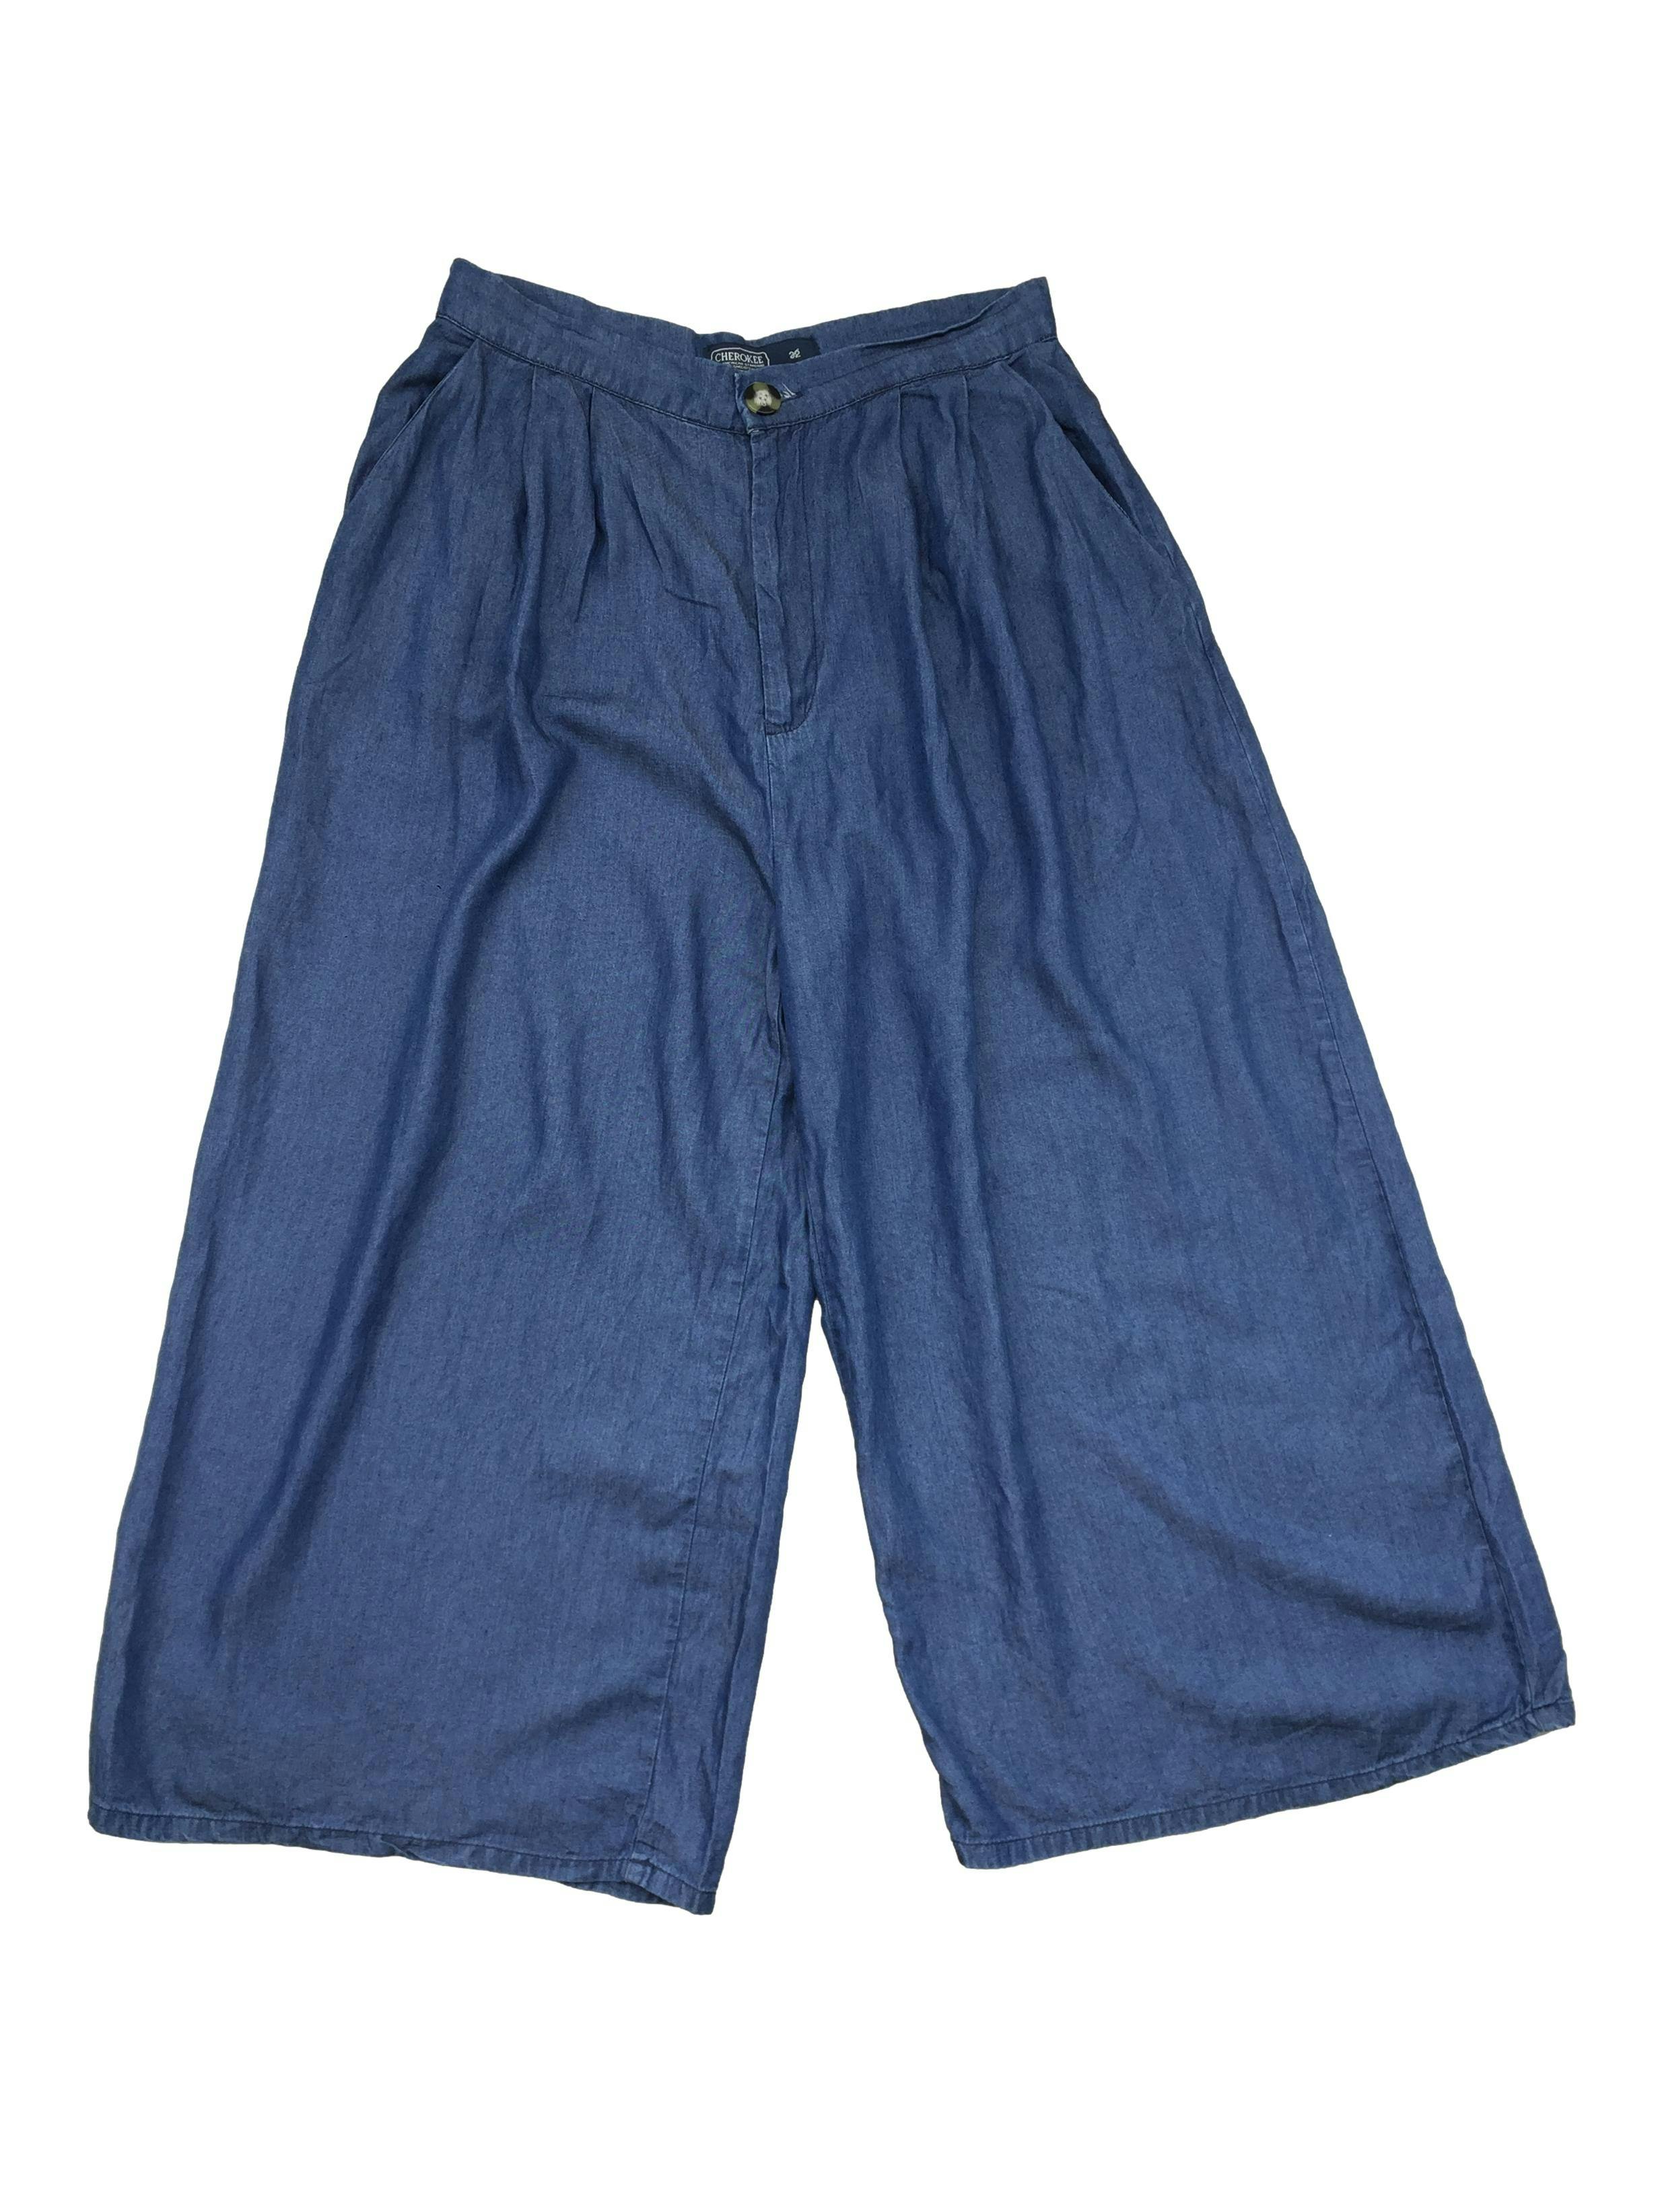 Pantalón Cherokee palazo azul, tela fluída. Cintura: 78cm, Tiro: 35cm, Largo: 95cm.